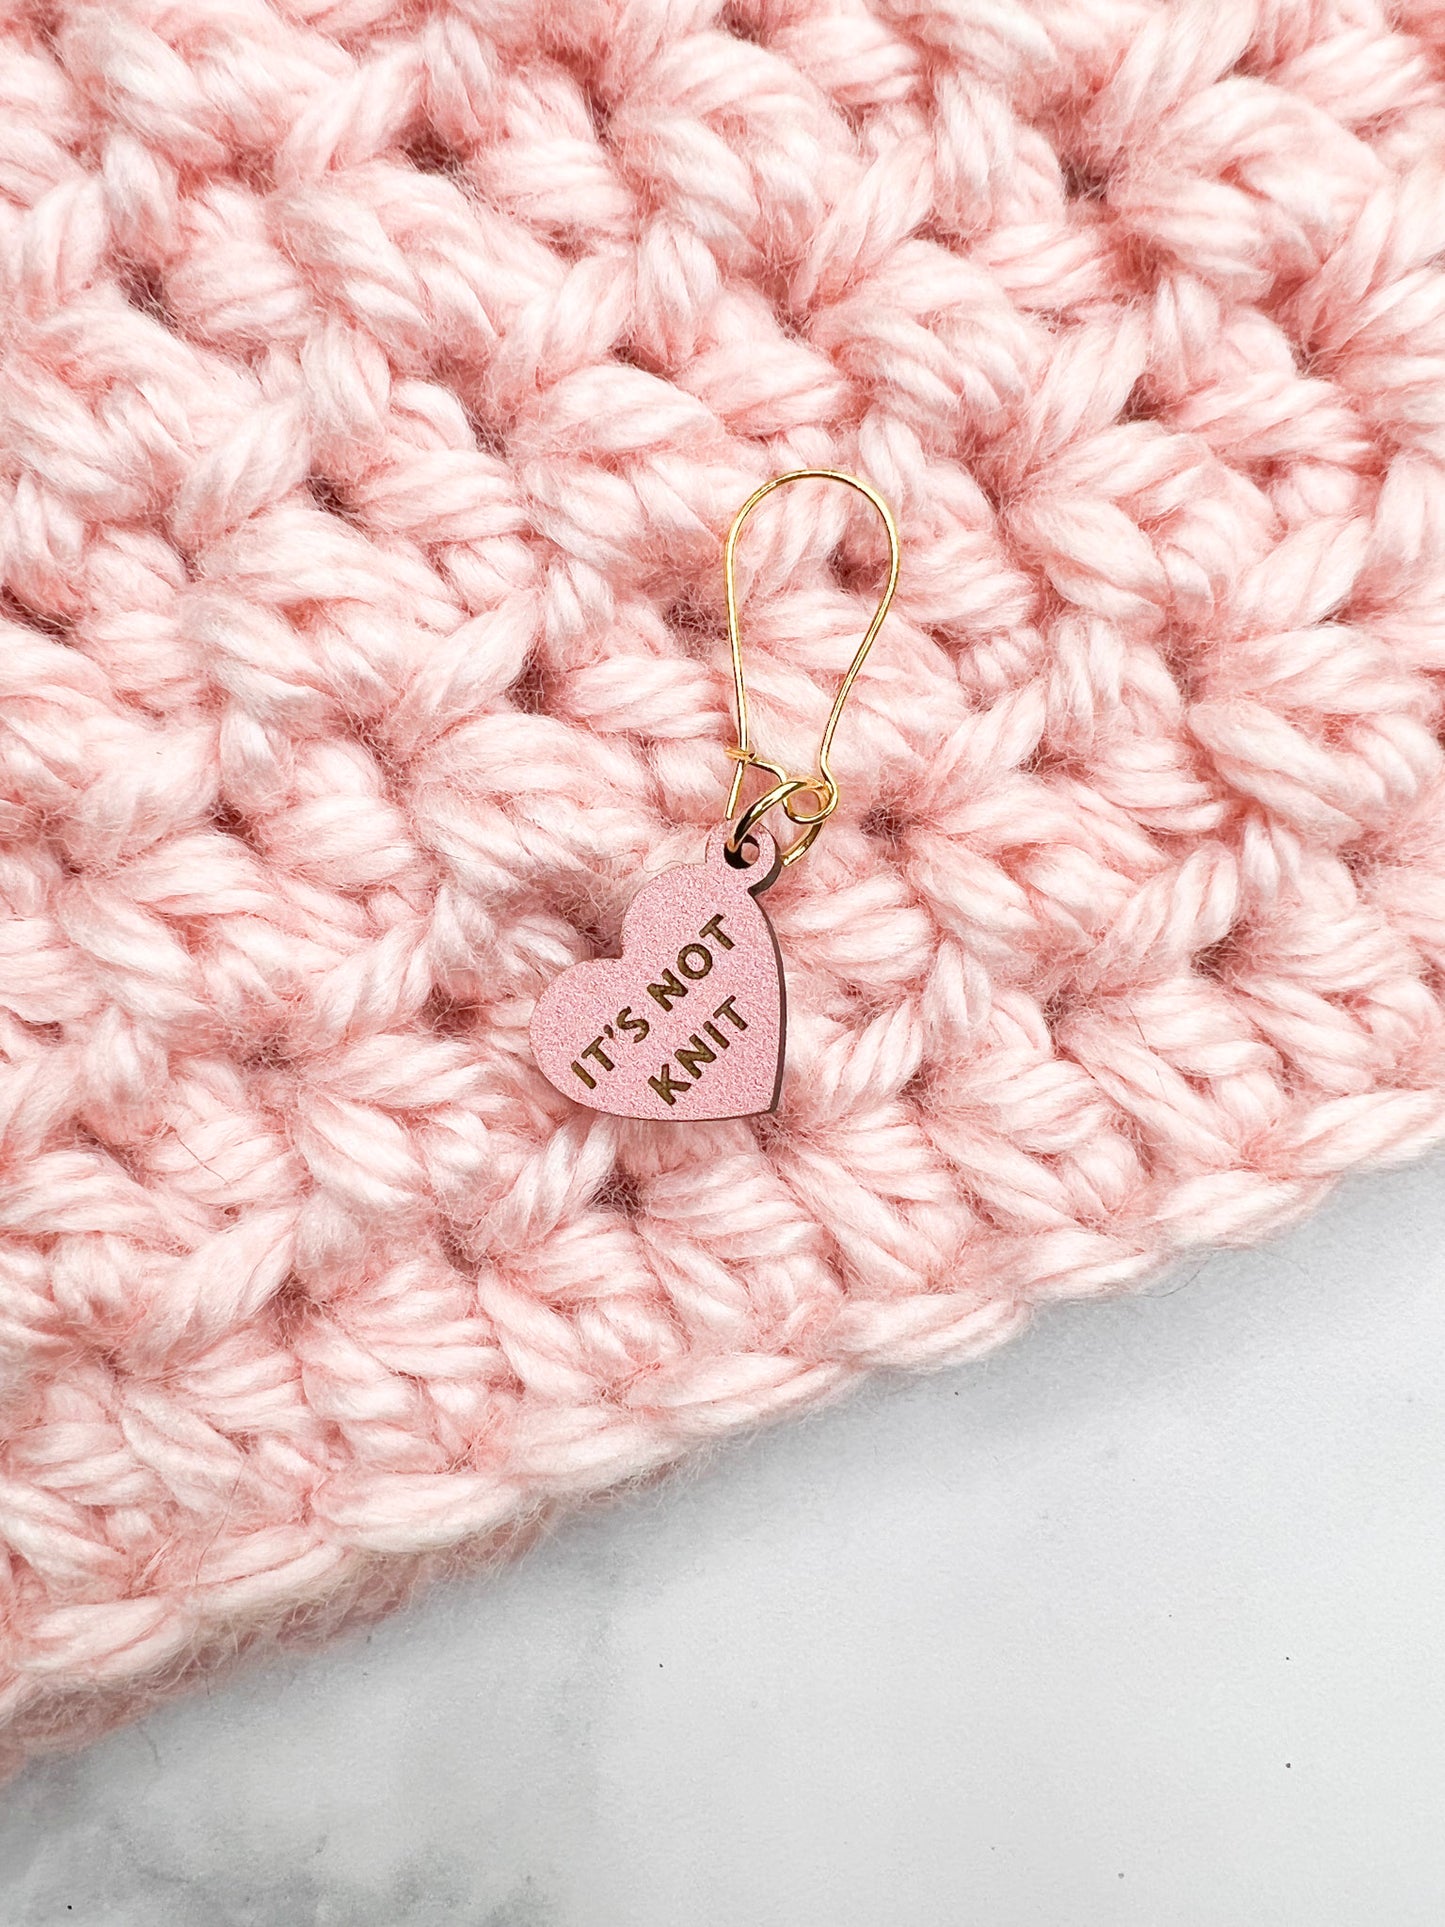 Heart Stitch Marker w/ Crochet Sayings